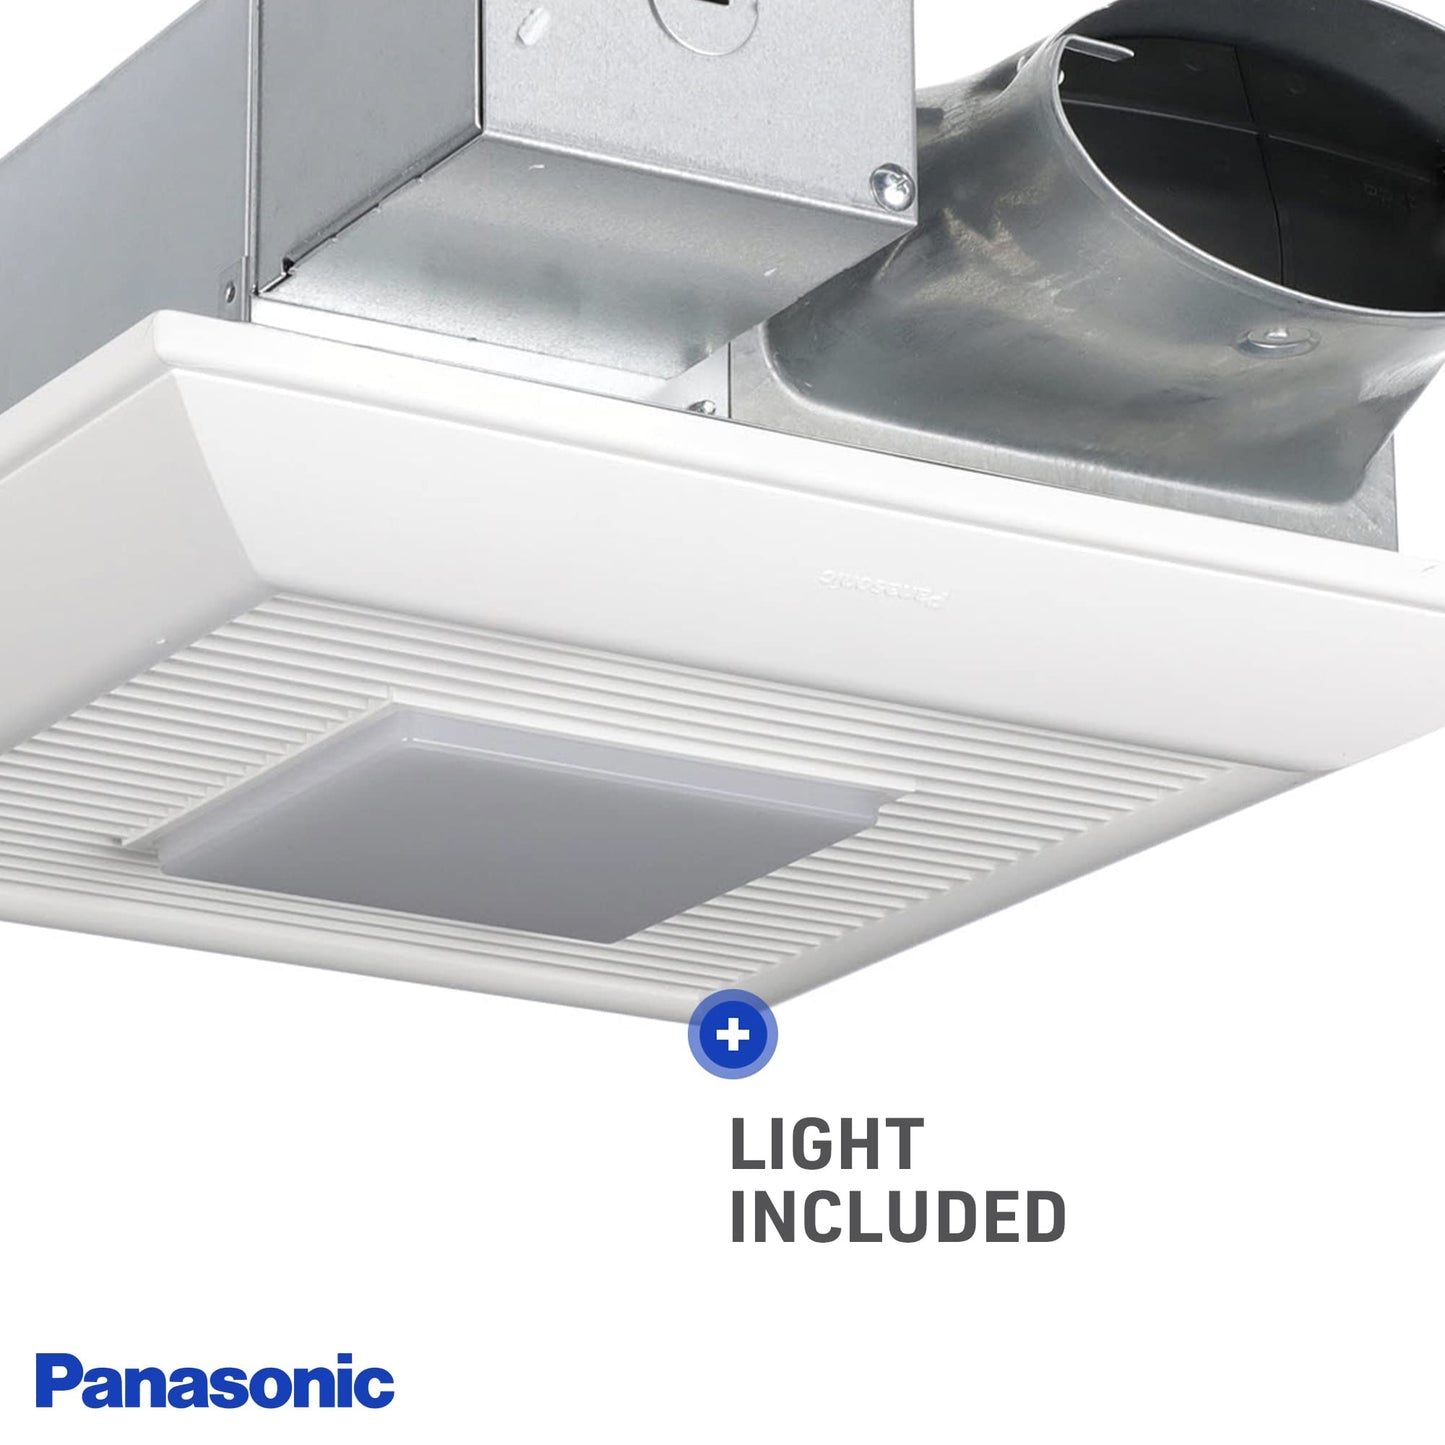 Panasonic FV-0510VSL1 WhisperValue DC Ventilation Fan - Energy-Saving Bathroom Fan with LED Light - 50-80-100 CFM